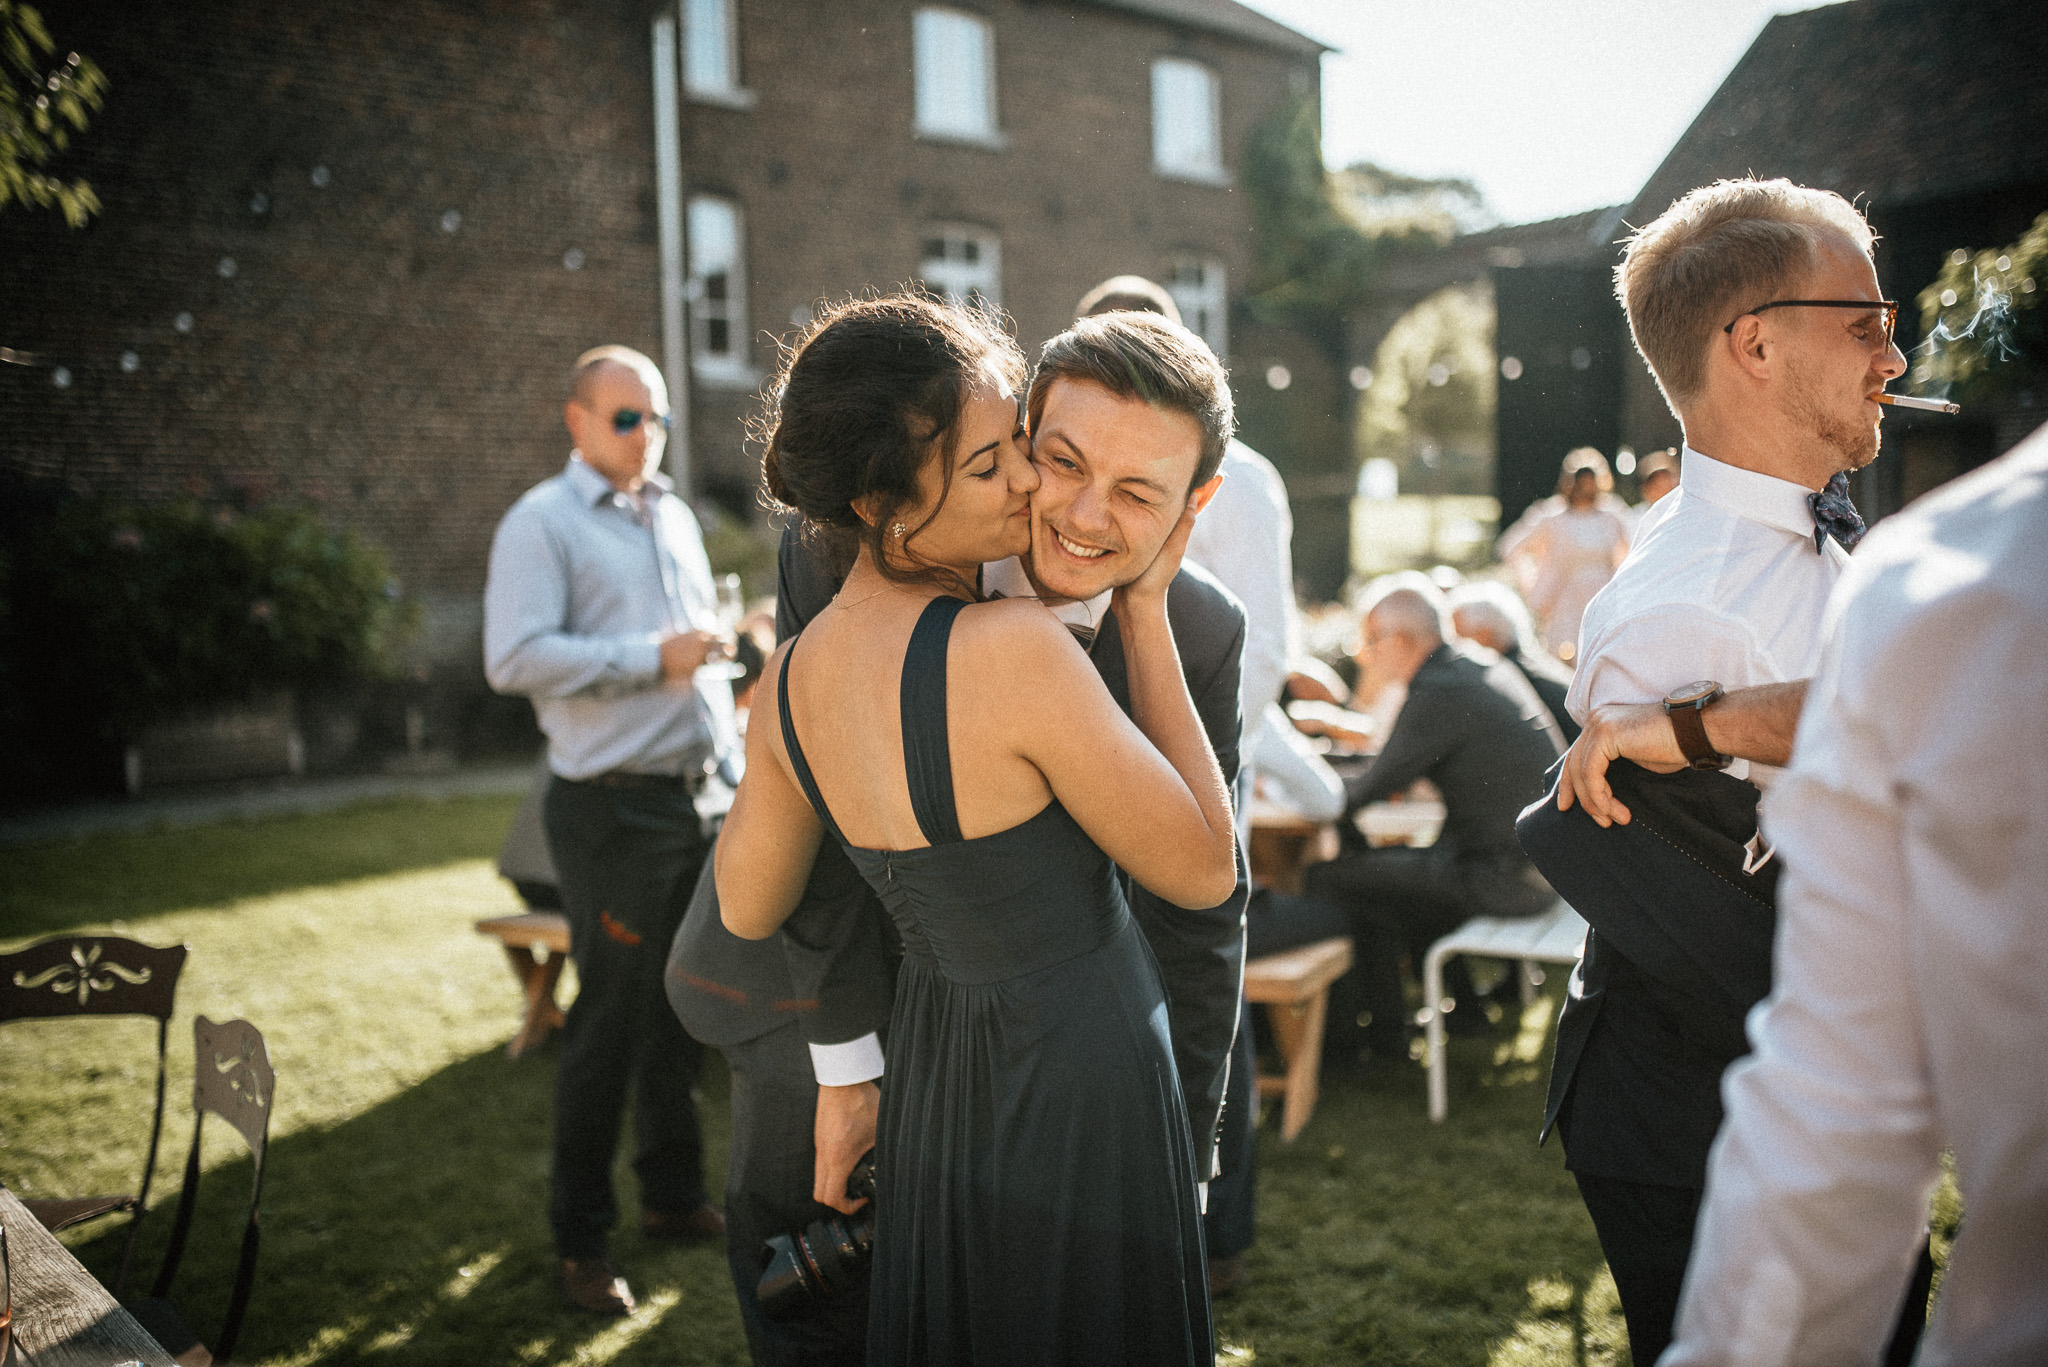 Trauung im Freien - Hochzeitsreportage Aachen Gianna und Tobi - Timo Hess Fotografie 